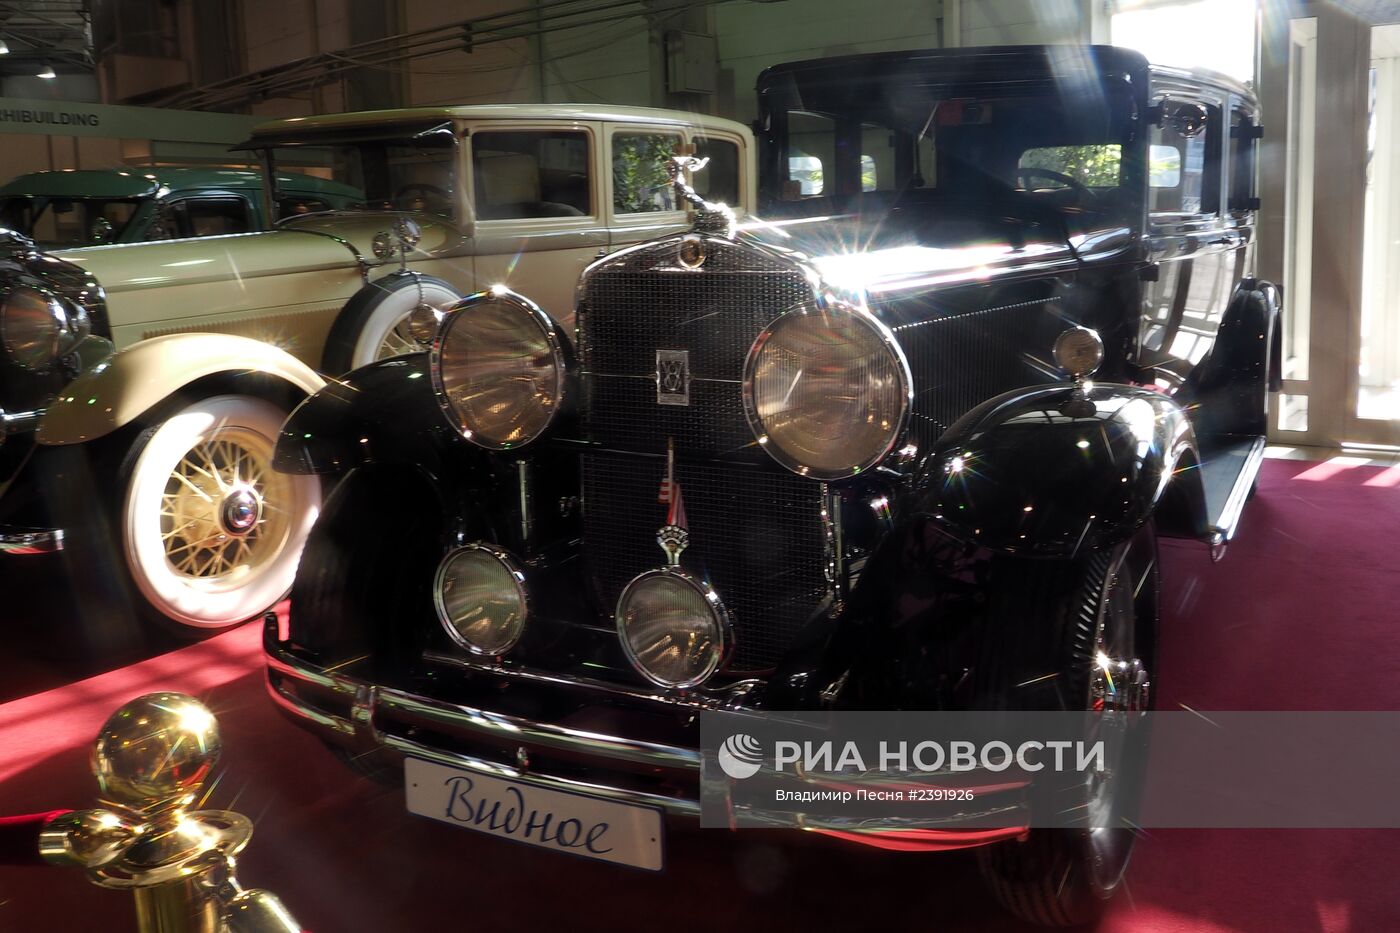 Выставка старинных автомобилей и антиквариата "XXII Олдтаймер галерея"